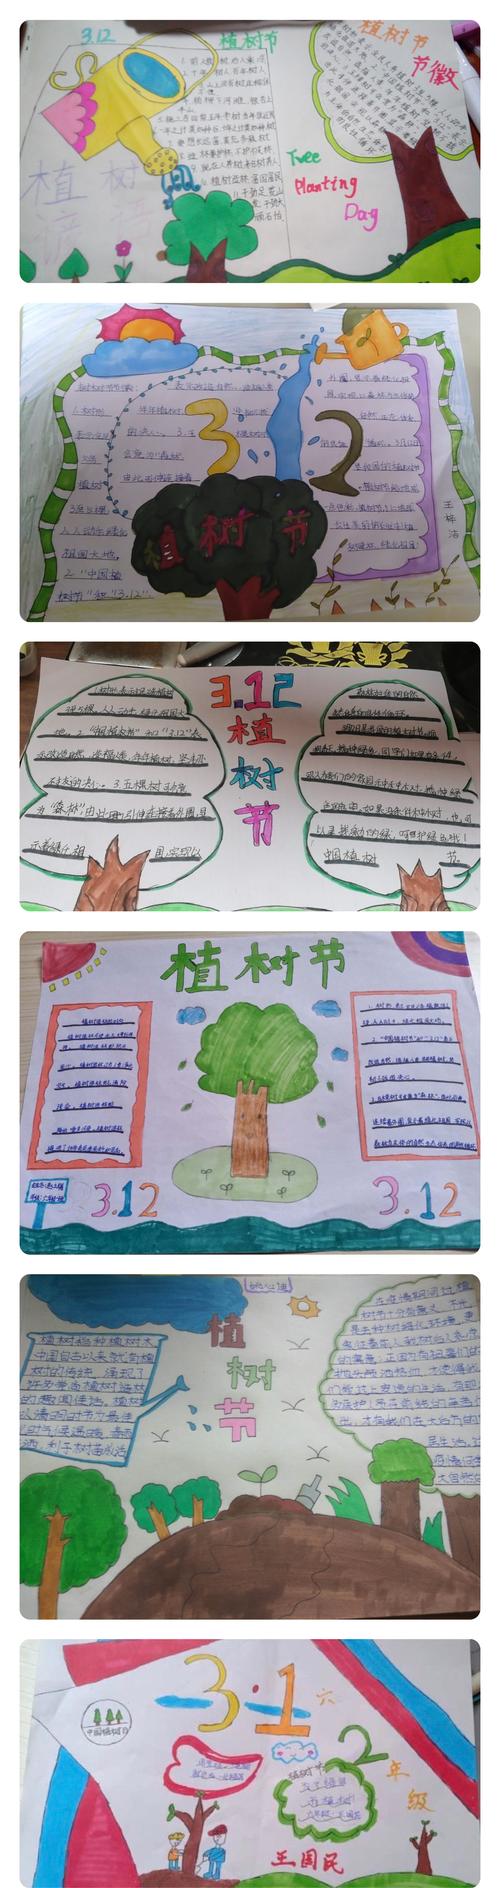 同学们制作了精美的手抄报向我们宣传有关于植树节的知识呼吁大家